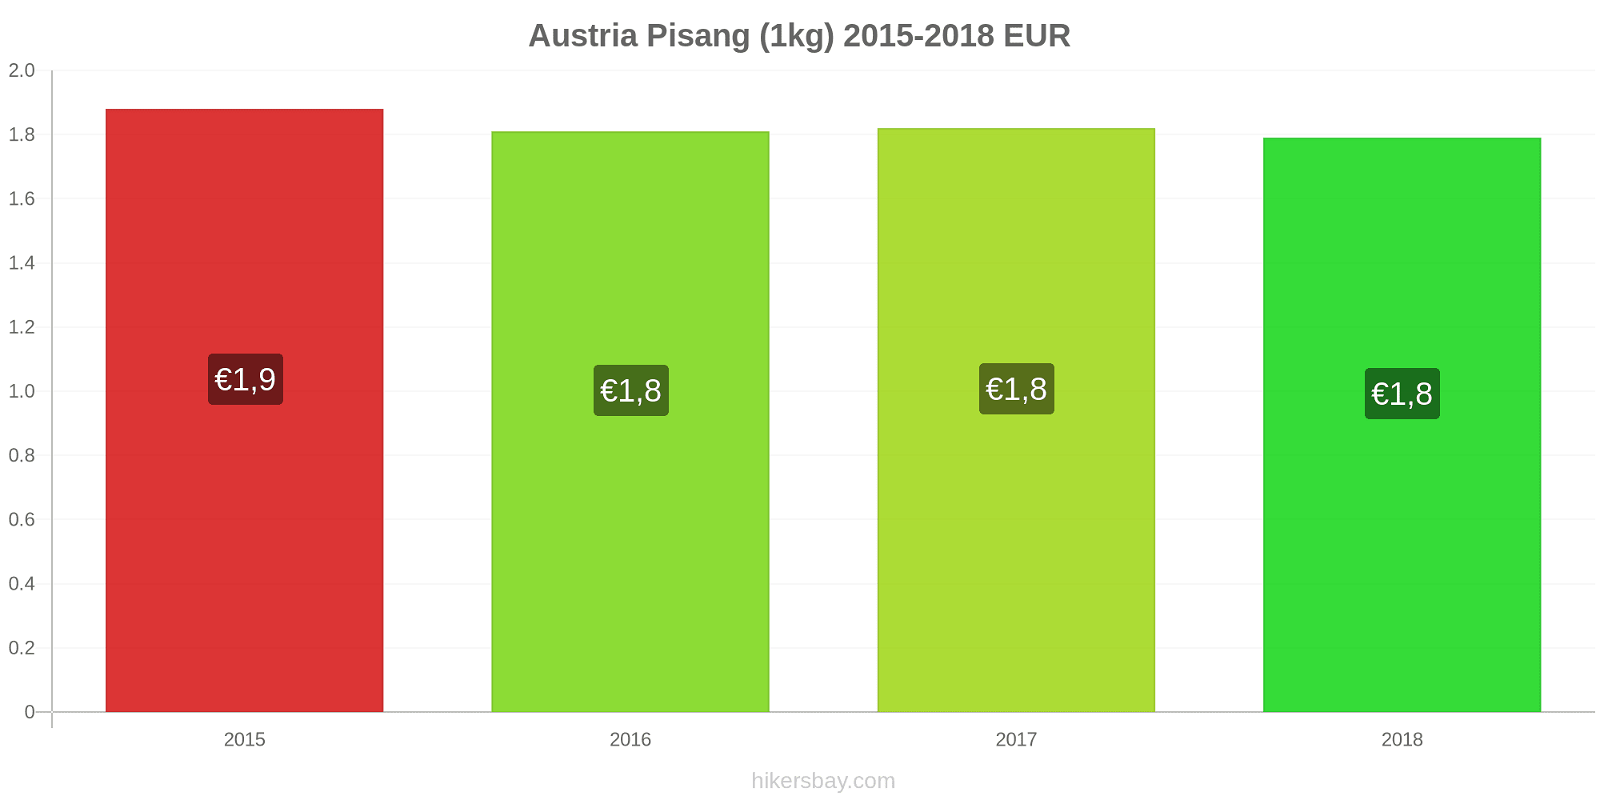 Austria perubahan harga Pisang (1kg) hikersbay.com